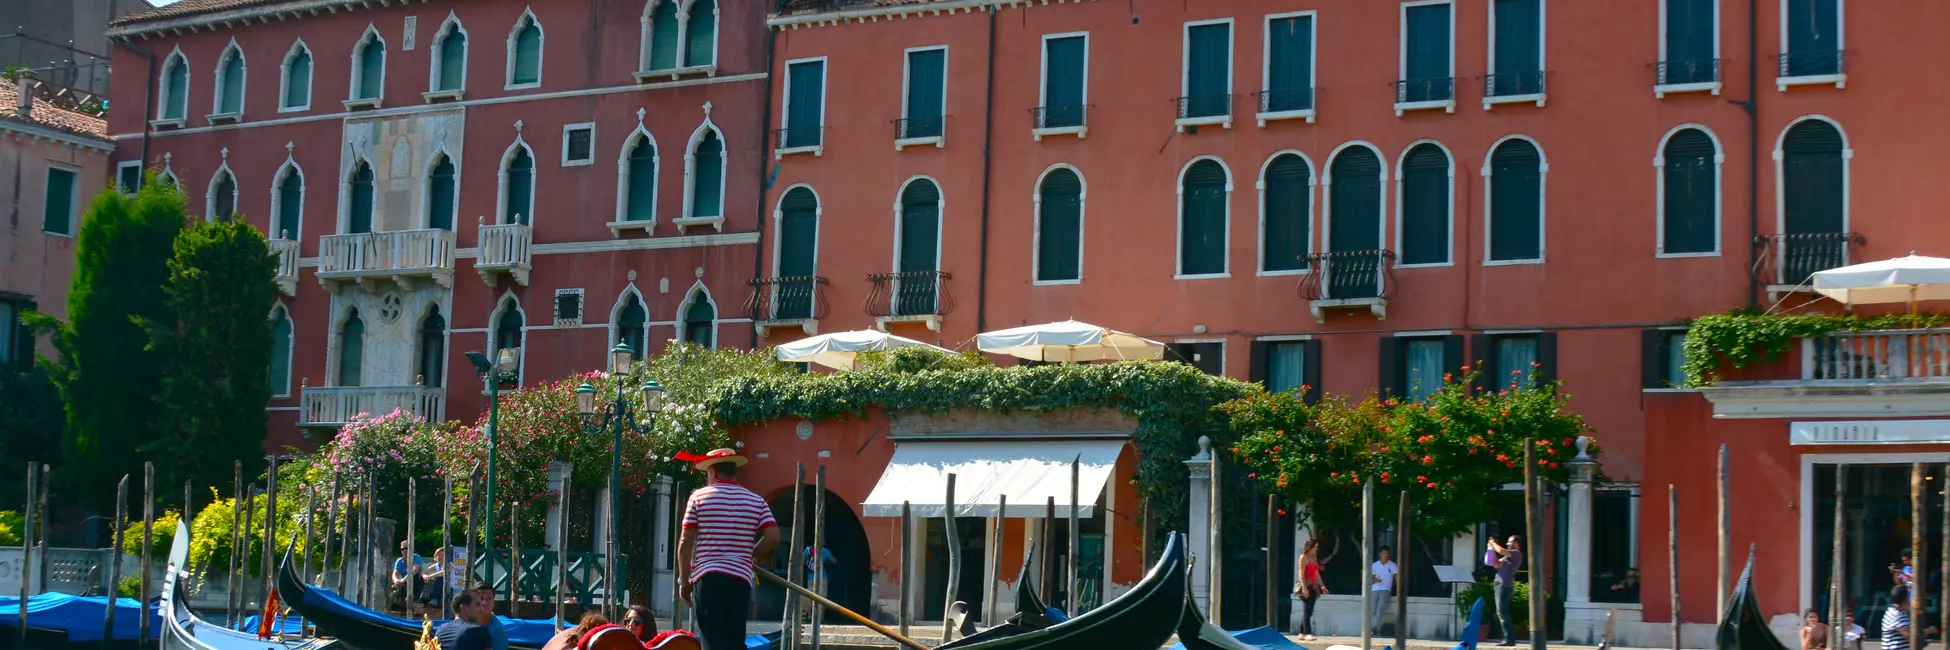 Les gondoles sur le grand canal de Venise 